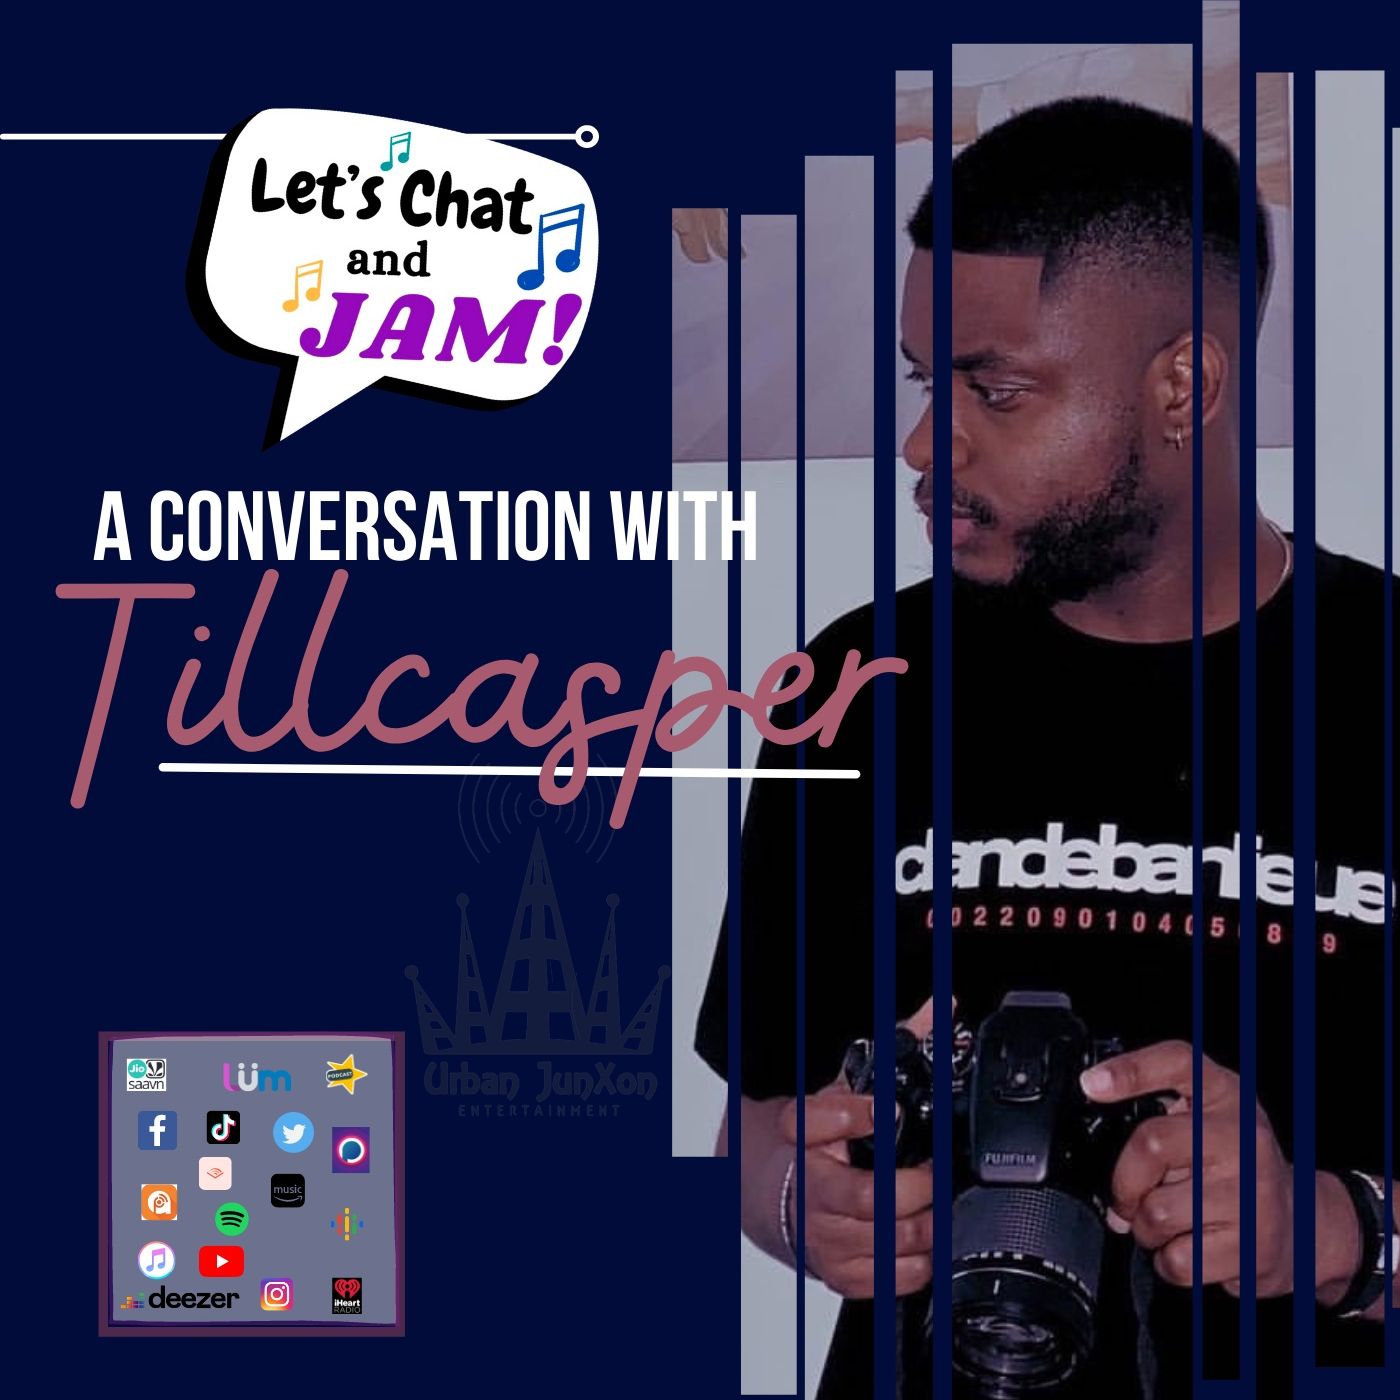 A Conversation With Tillcasper